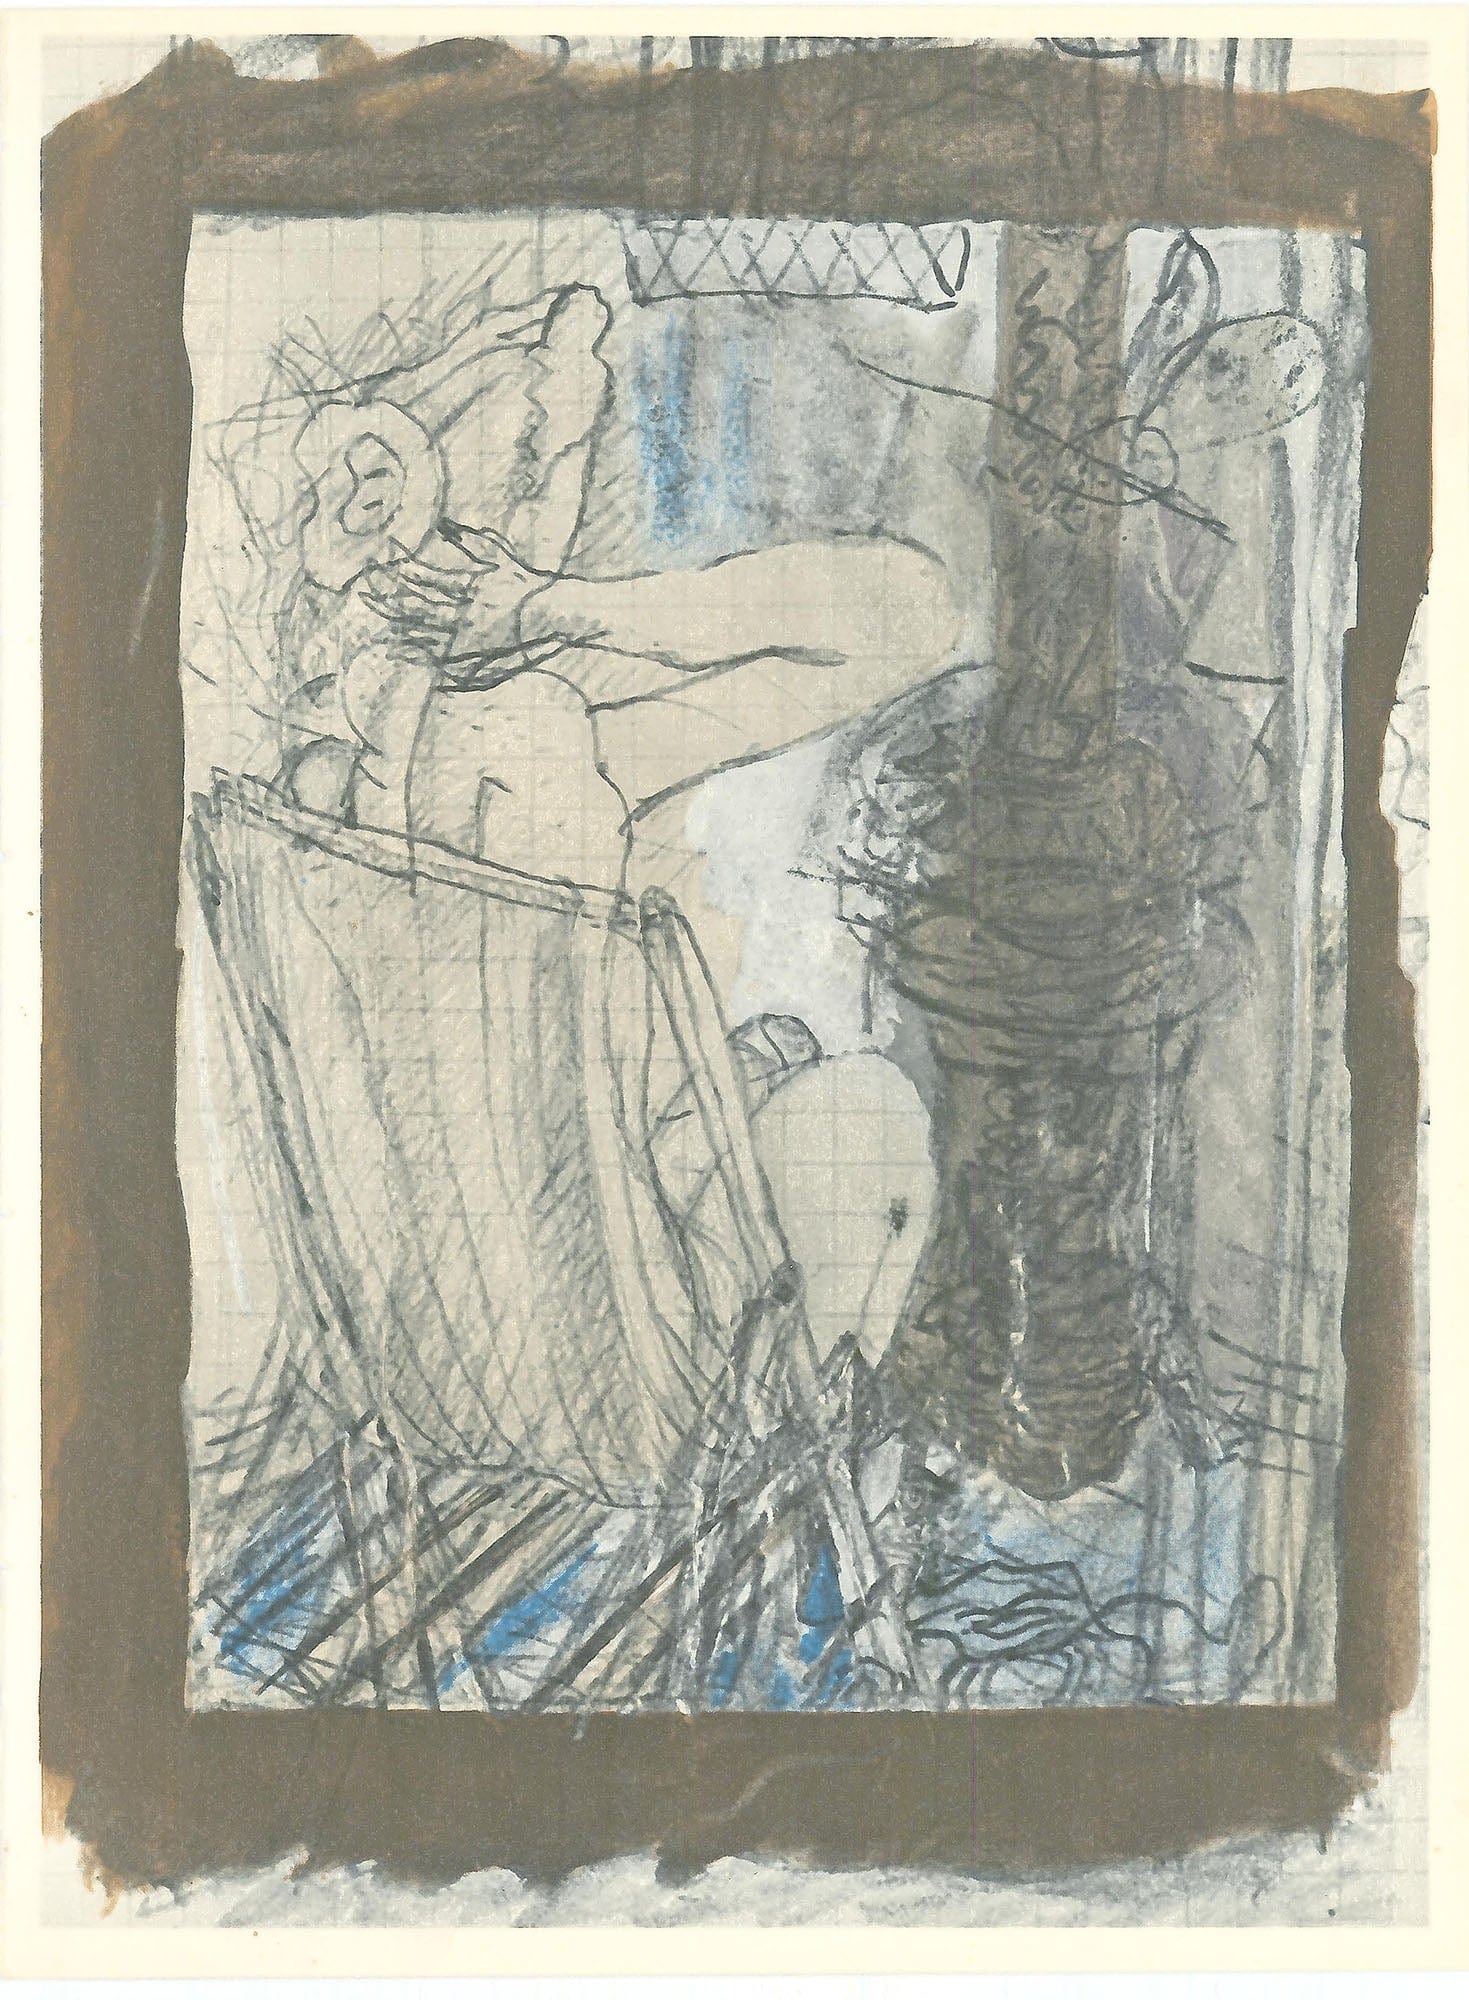 Georges Braque, "Untitled IV" ZOOM Vol. 8 No. 31 ET 32 verve lithograph